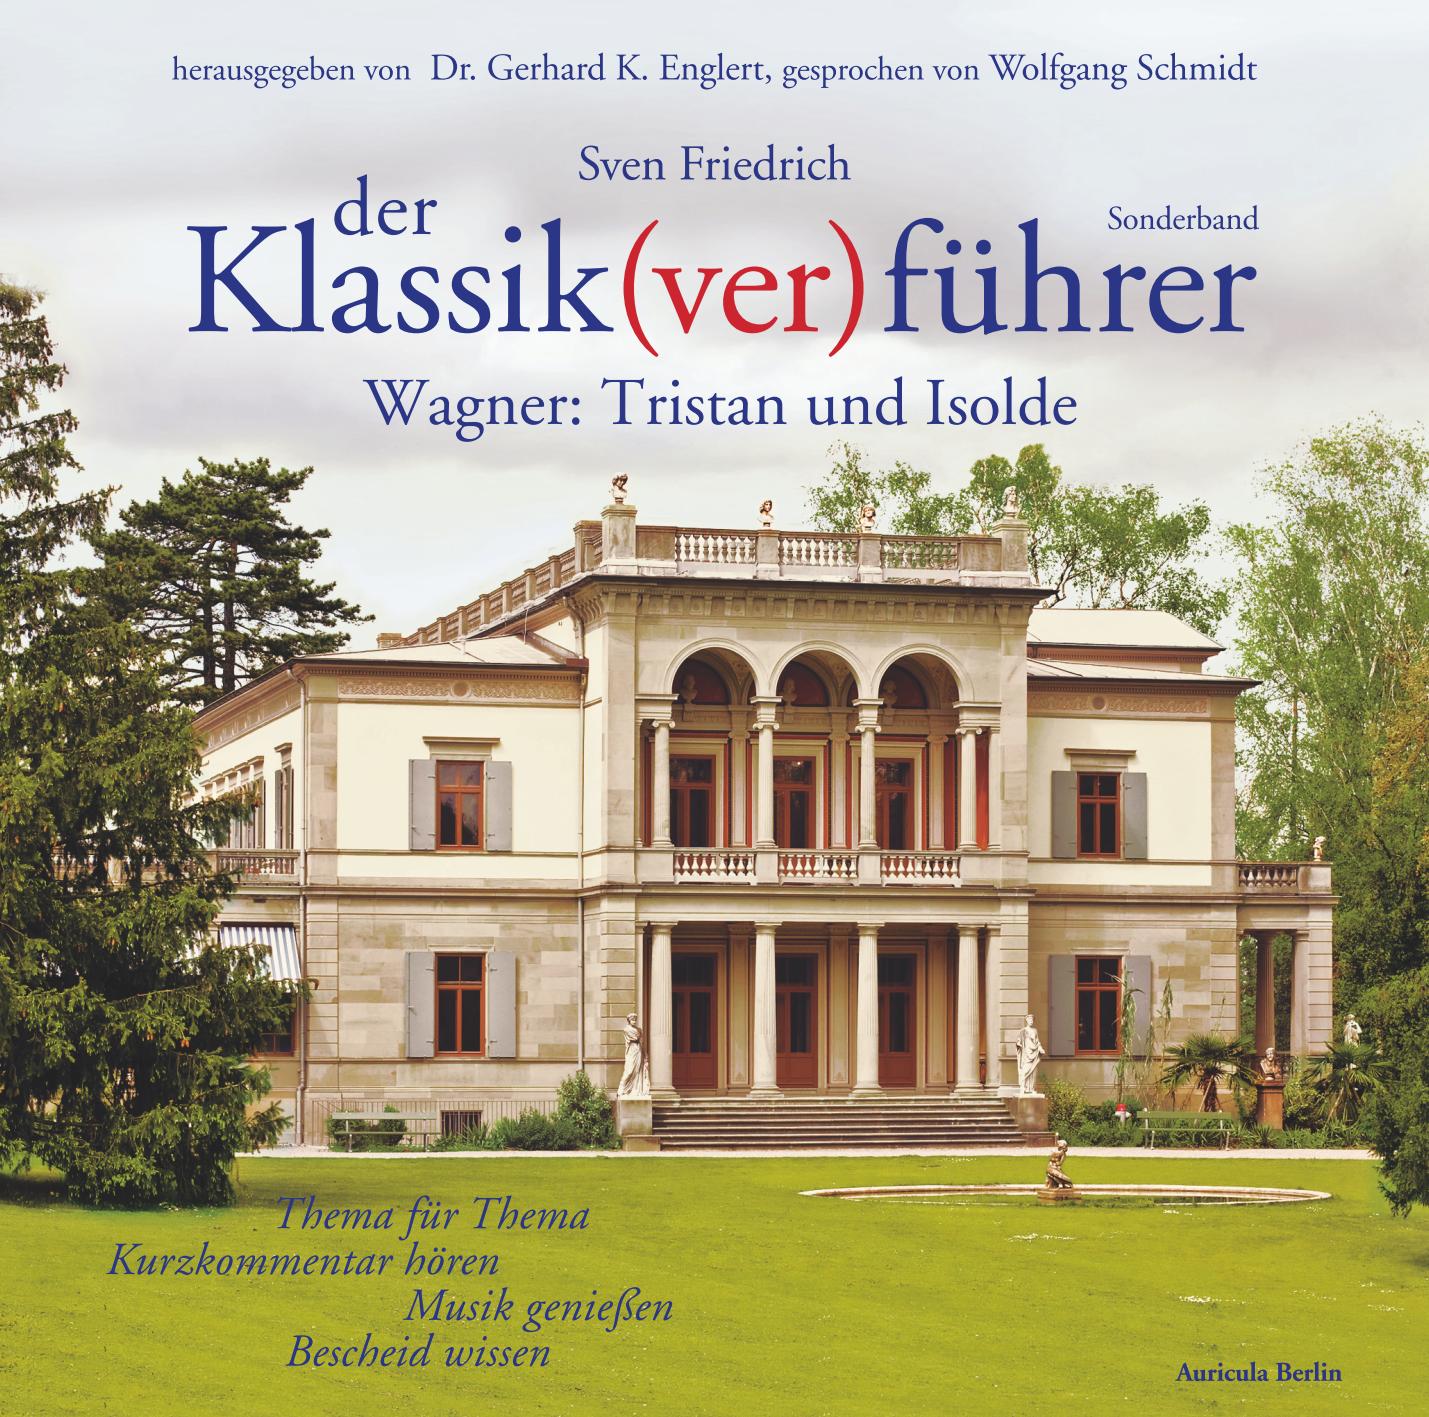 Der Klassik(ver)führer, Sonderband Wagner: Tristan und Isolde